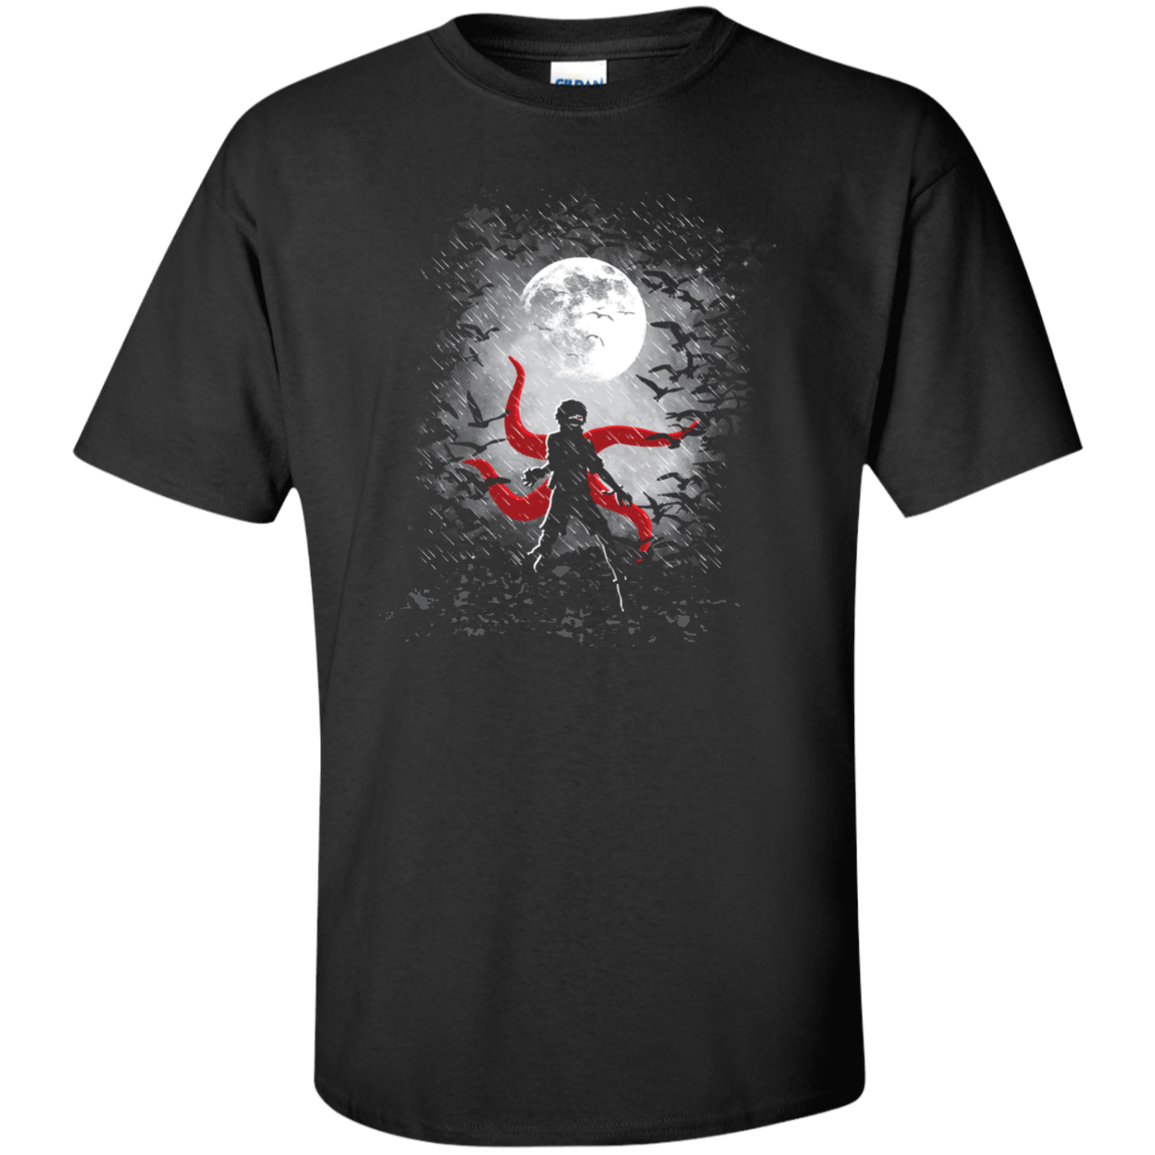 Darkest Hour Tall T-Shirt